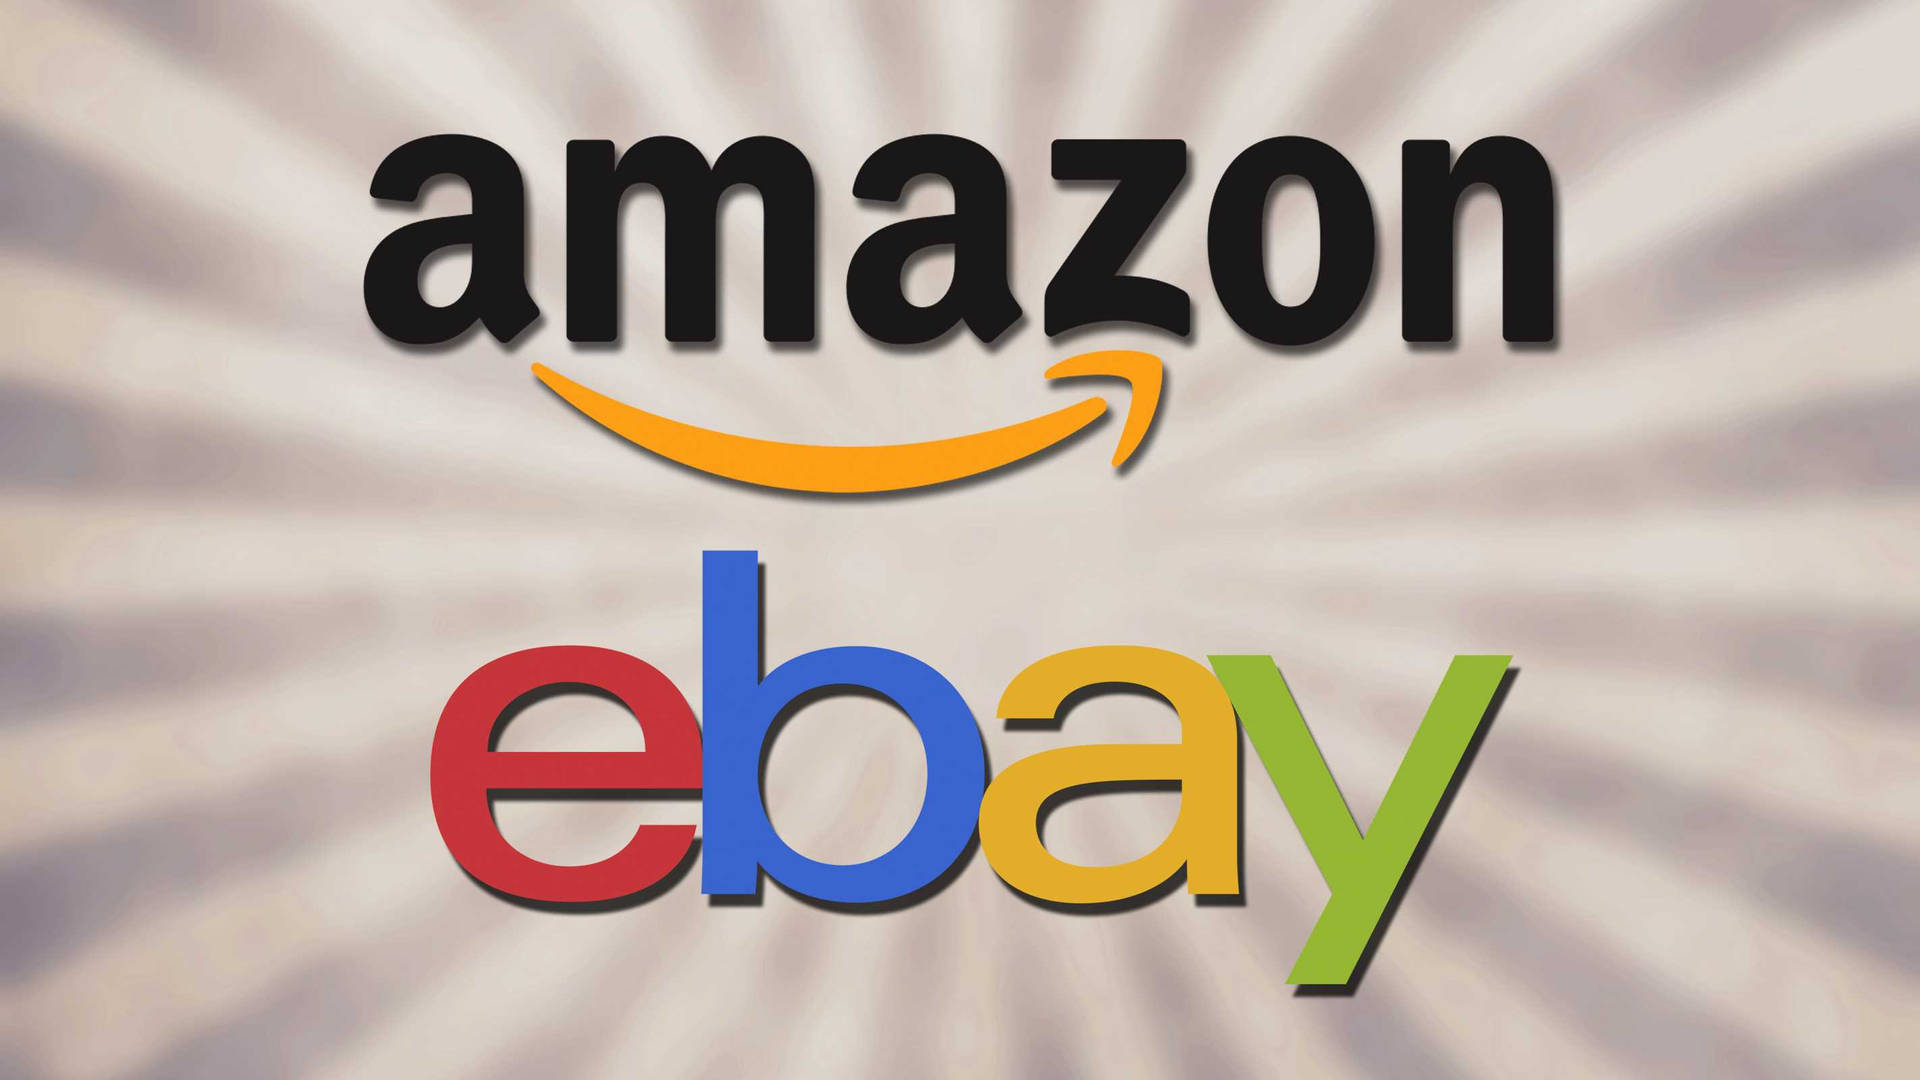 Amazon And Ebay Logos Background